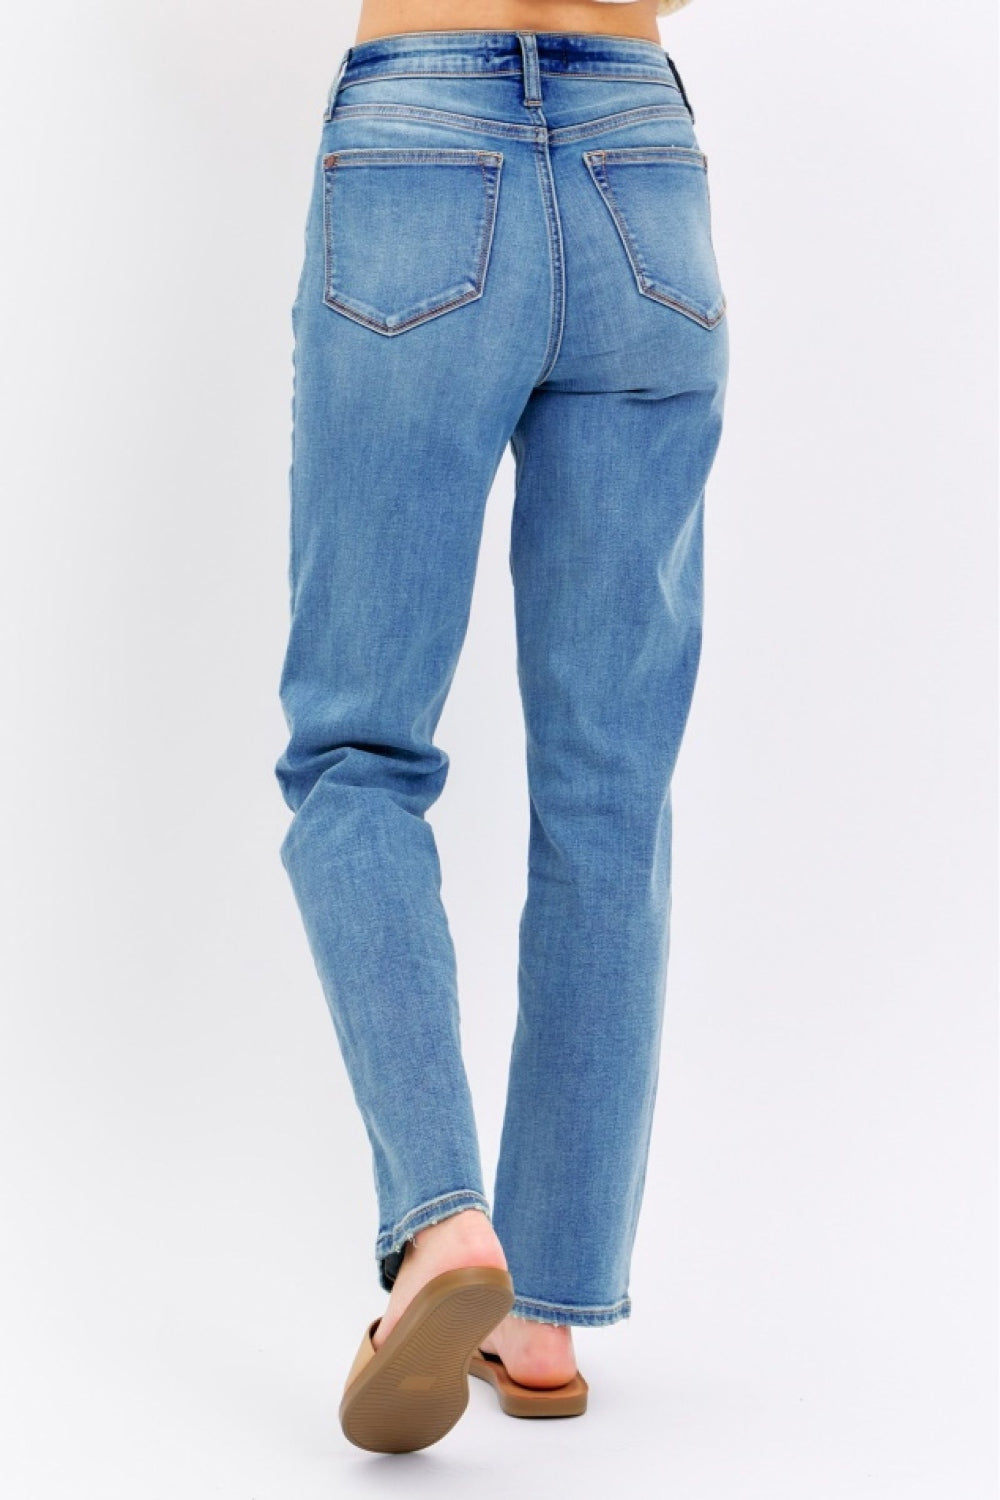 High Rise Waist Boyfriend Jeans Straight Leg Relaxed Fit Denim Pants Judy Blue